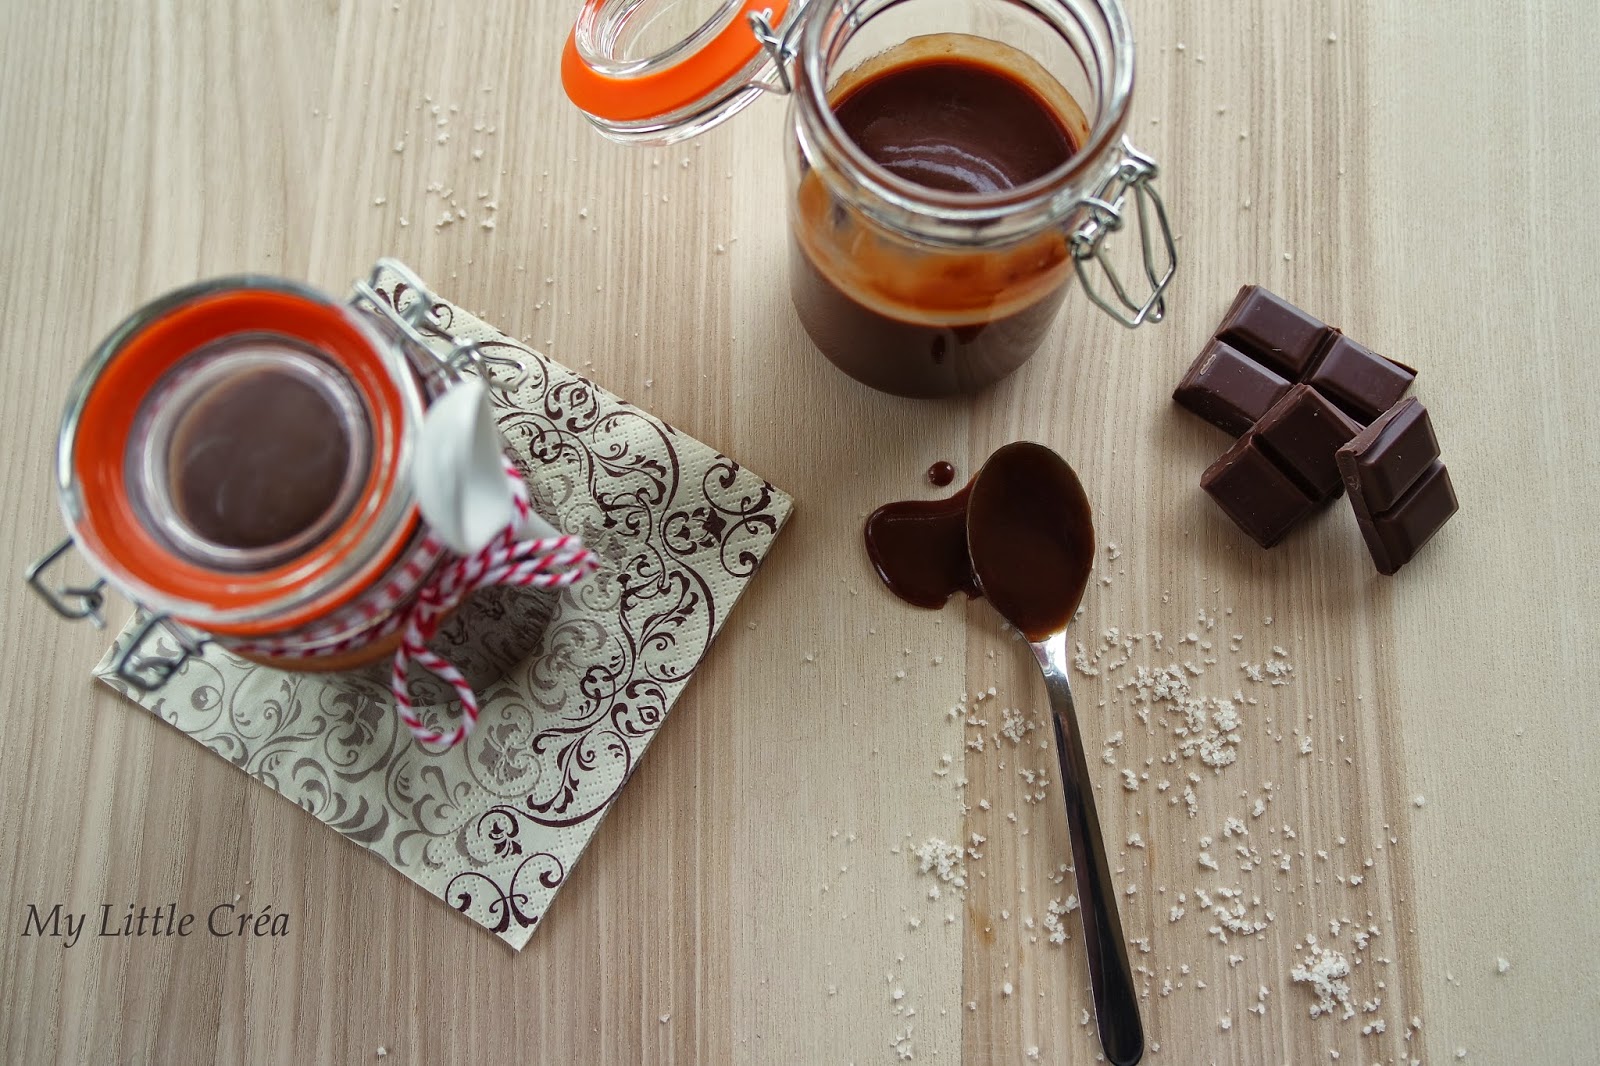 My Little Créa: Pâte à tartiner maison chocolat/caramel beurre salé # Régilait